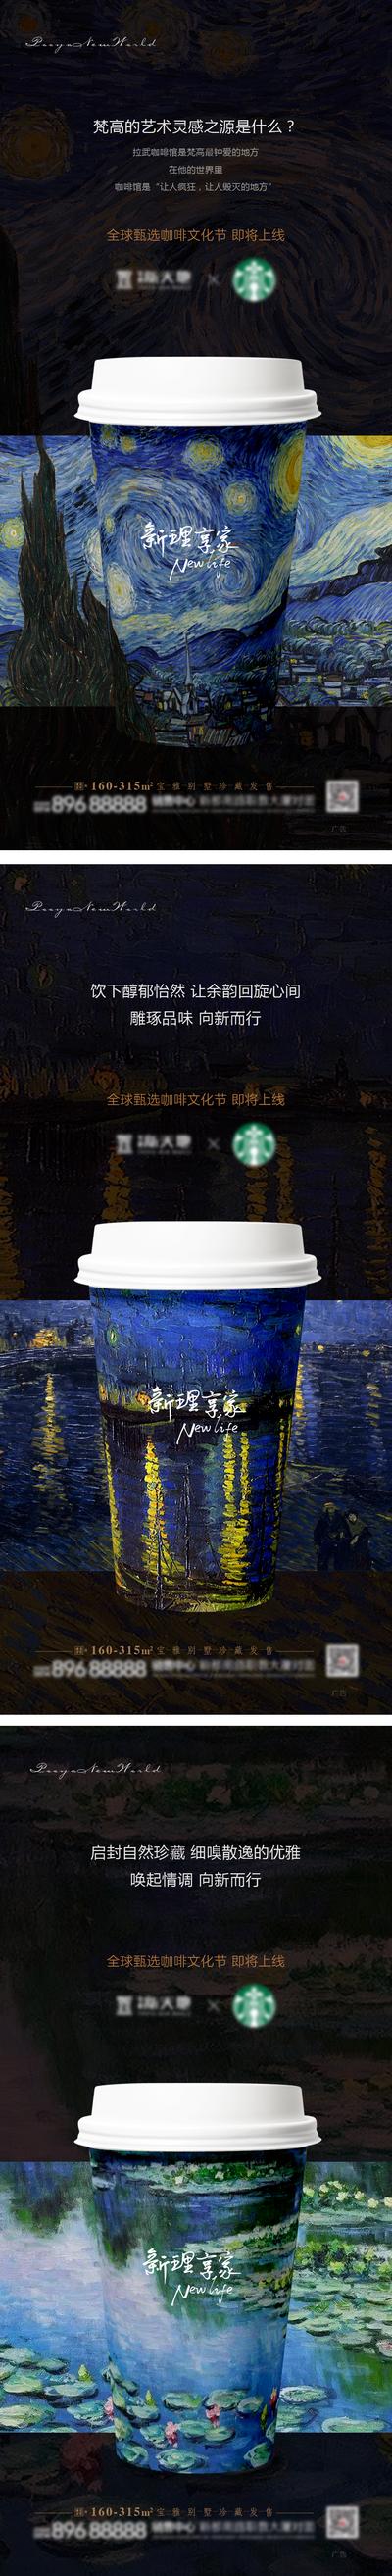 南门网 海报 地产 系列 暖场 活动 咖啡 文化艺术节 世界名画 纸杯 创意